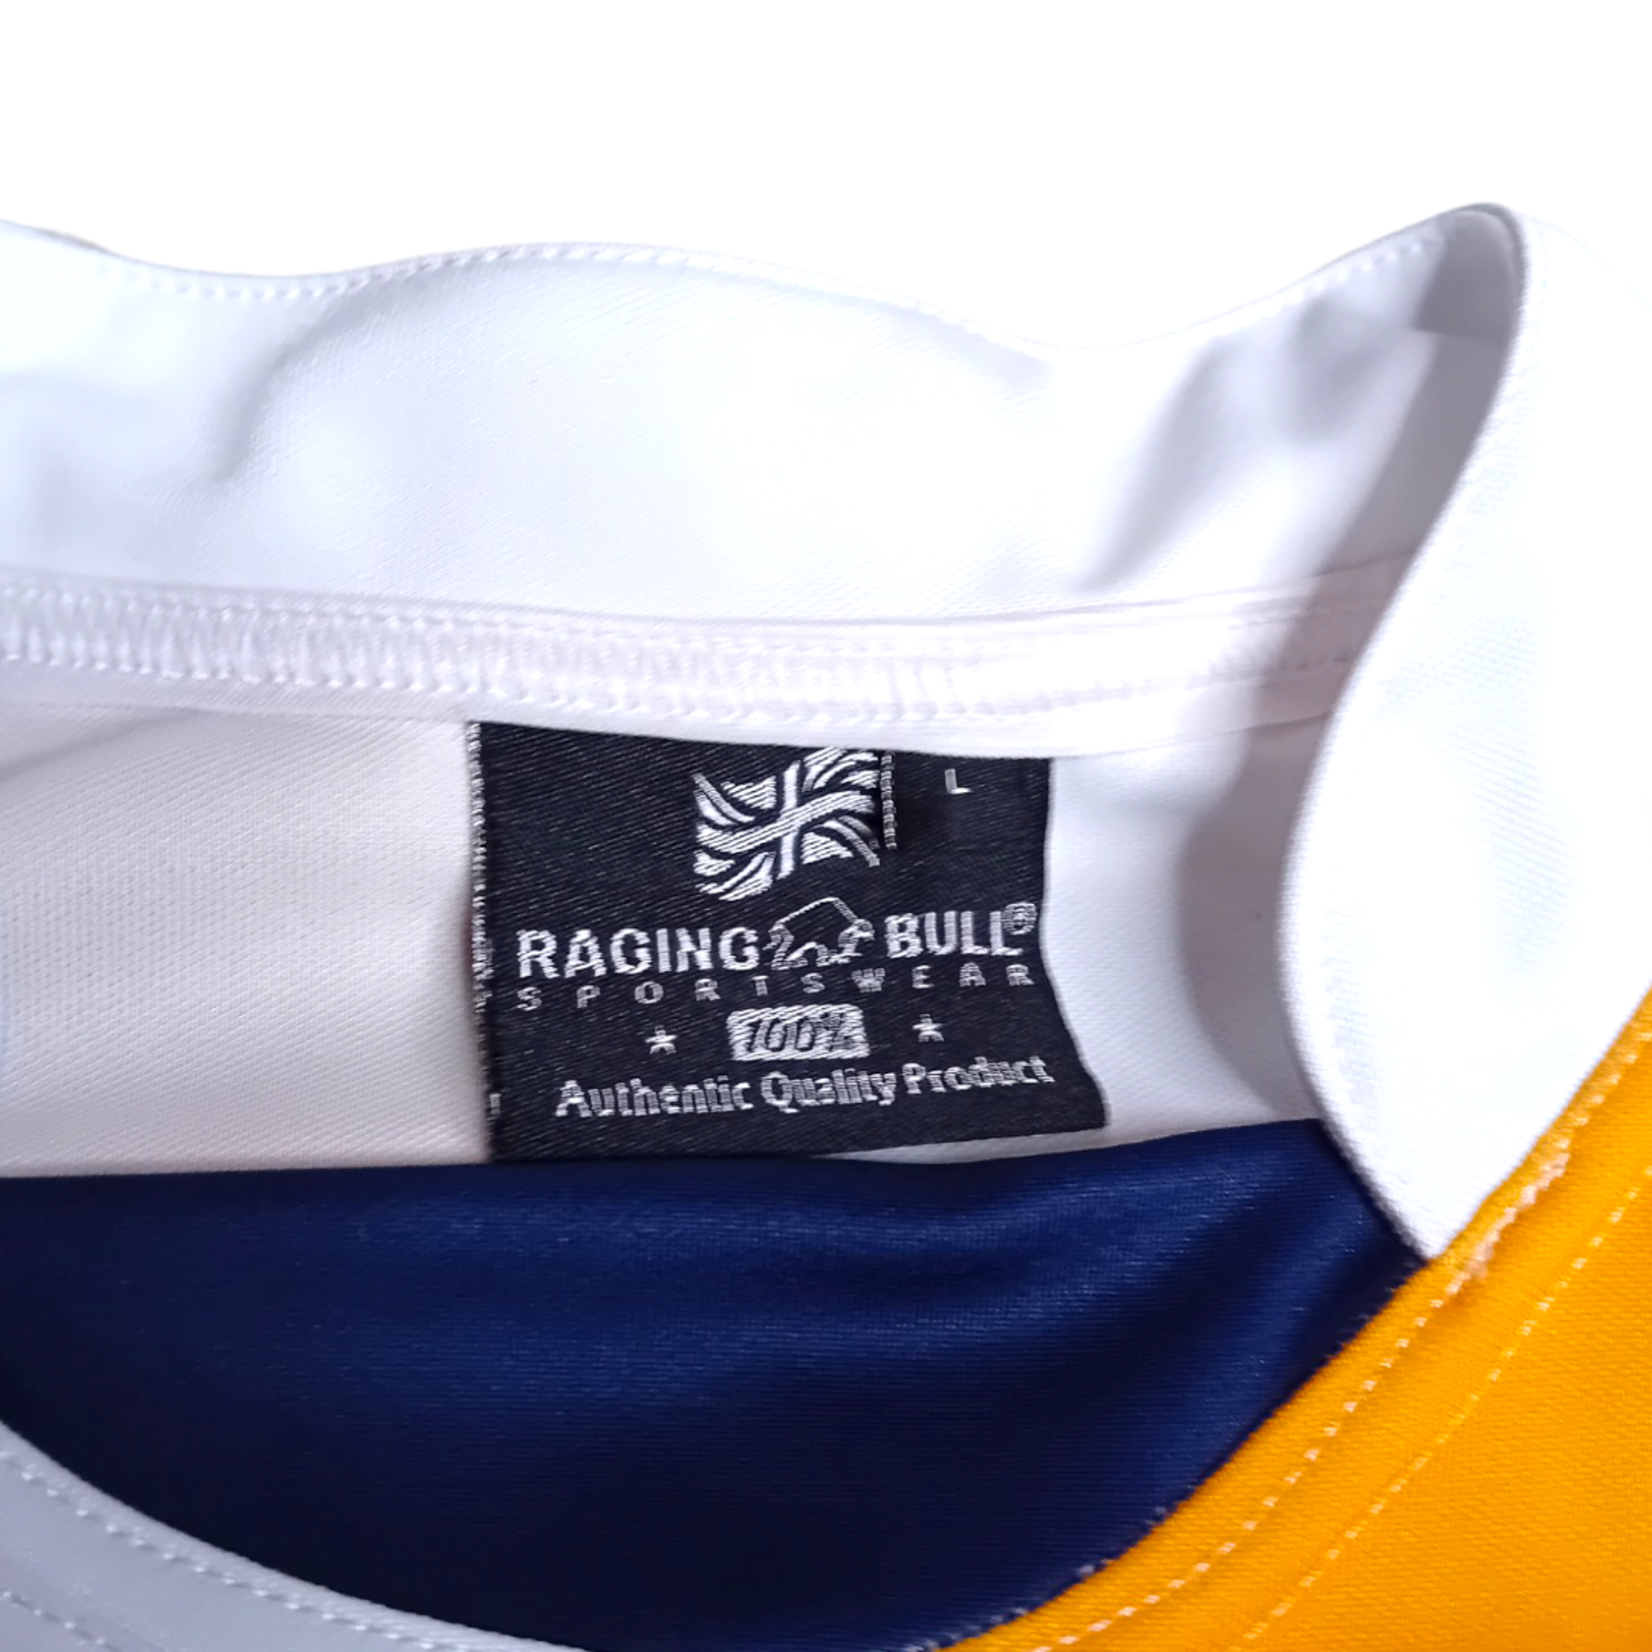 Raging Bull Sportswear Original Raging Bull Sportswear Vintage Rugby-Shirt Rugby Club Hilversum (Referee)